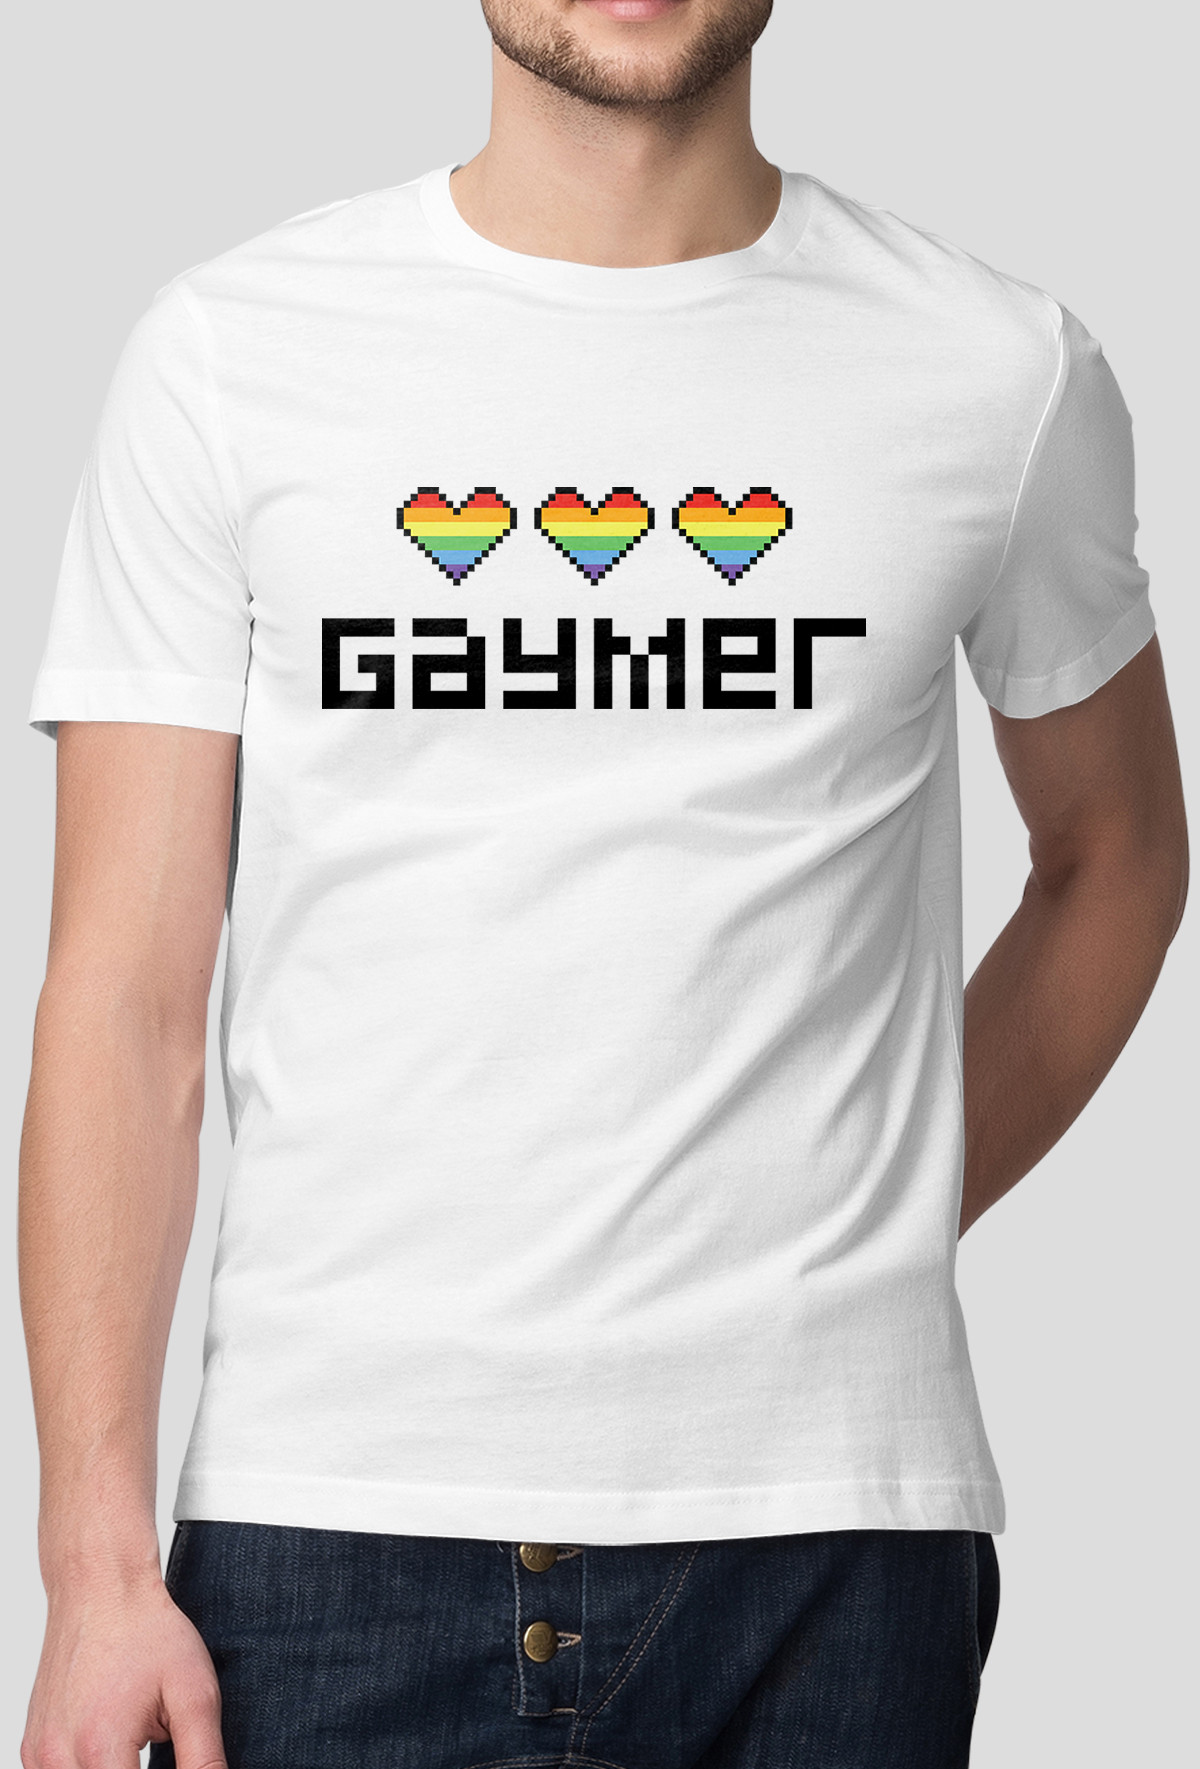 Koszulka - Gaymer (Oryginalny Prezent)